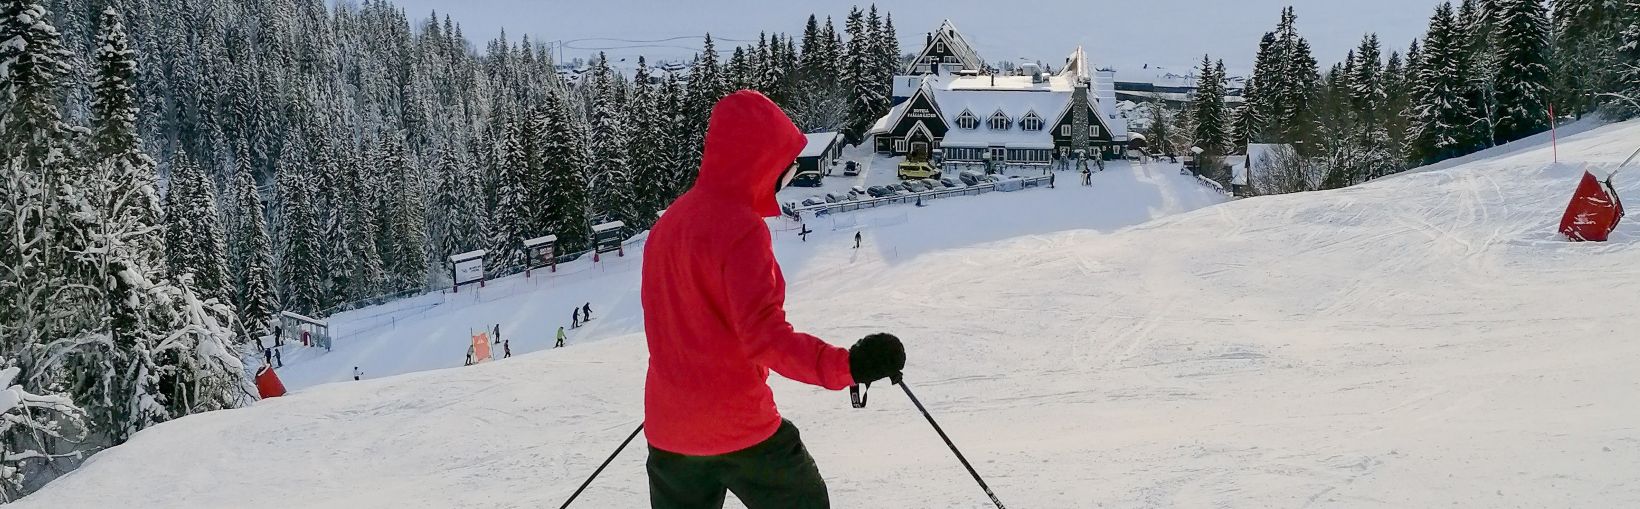 Skifahren bei schönem sonnigem und verschneitem Wetter im Wintersportort Åre in Schweden